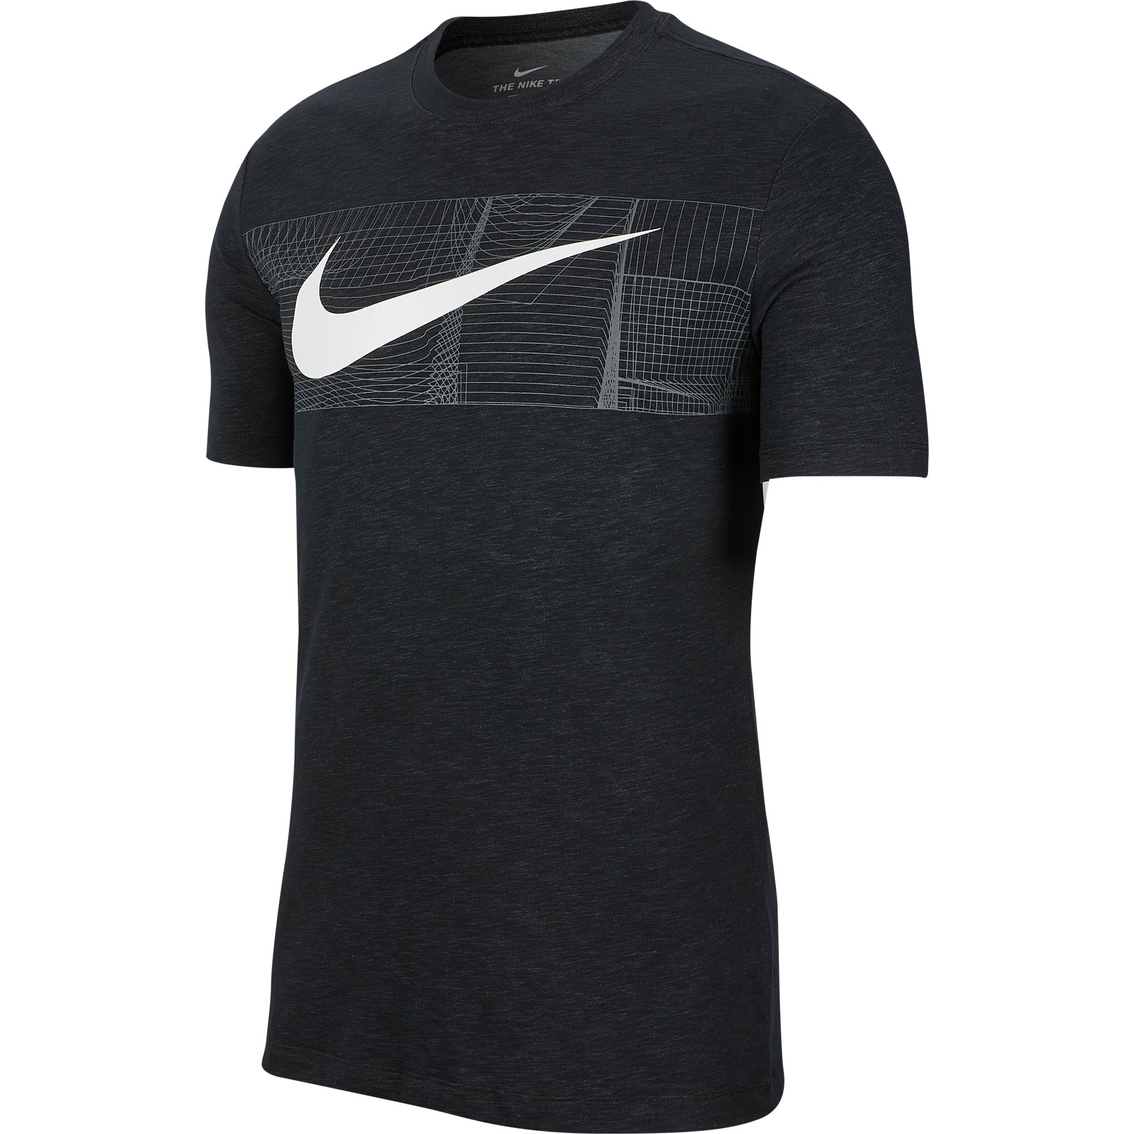 Nike Dri Fit Cotton Slub 1 Training Tee | Shirts | Clothing ...